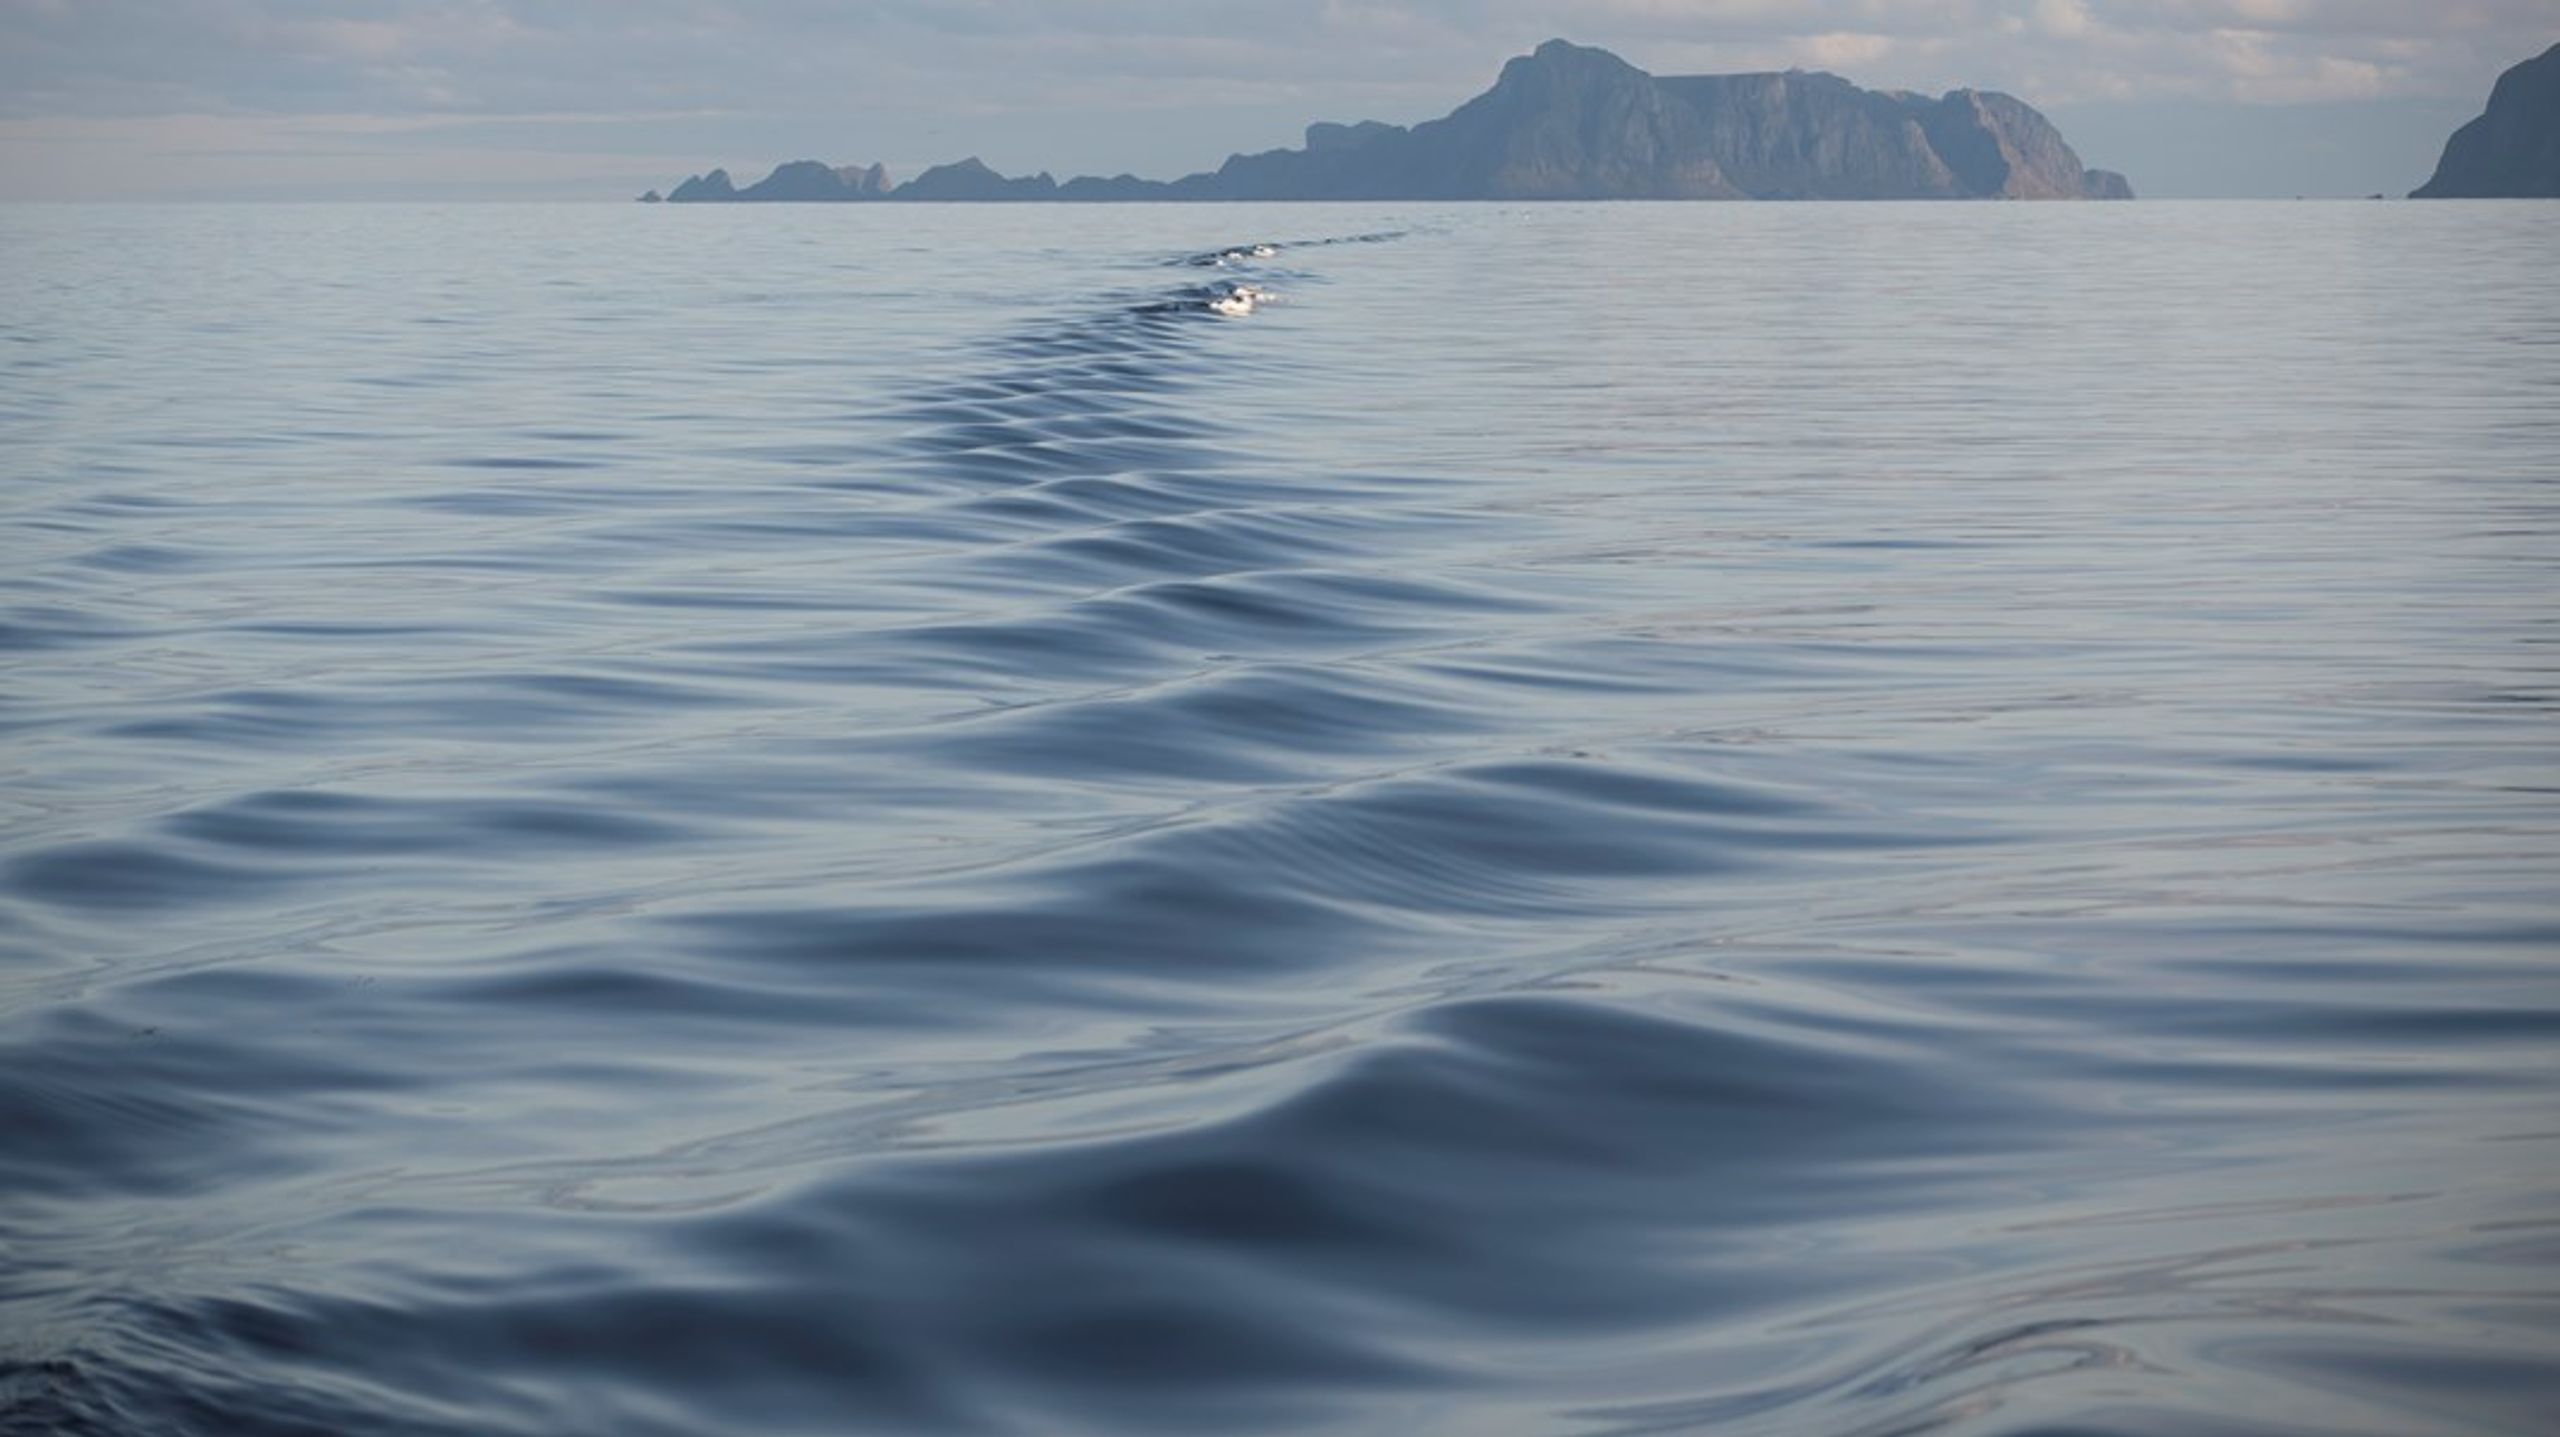 Stortinget behandler nå regjeringens forvaltningsplaner, og har en enestående mulighet til å sikre at Norge ikke bare snakker om bærekraftig havforvaltning, men faktisk implementerer det gjennom en robust, helhetlig marin arealplan, skriver innleggsforfatterne.